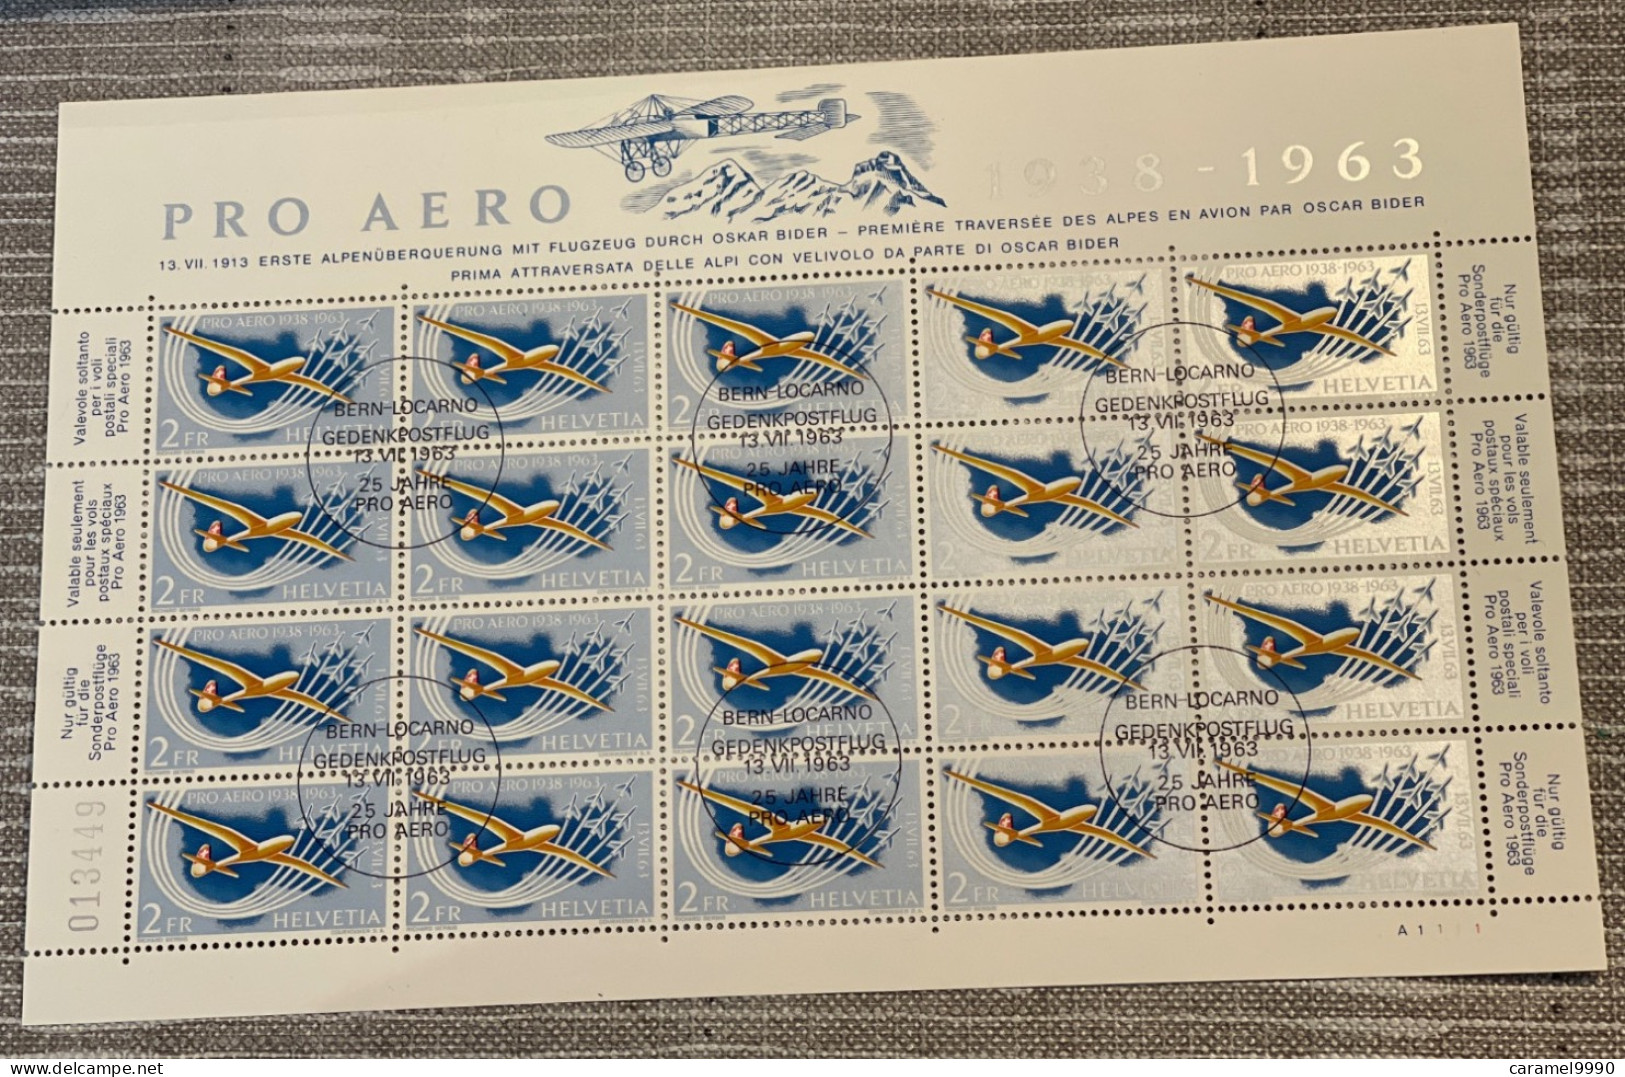 Suisse // Schweiz // Poste Aérienne // 1963 // Feuillet Neuf ** MNH Du Timbre Pro-Aéro 1963 No.46  Z 57 - Used Stamps